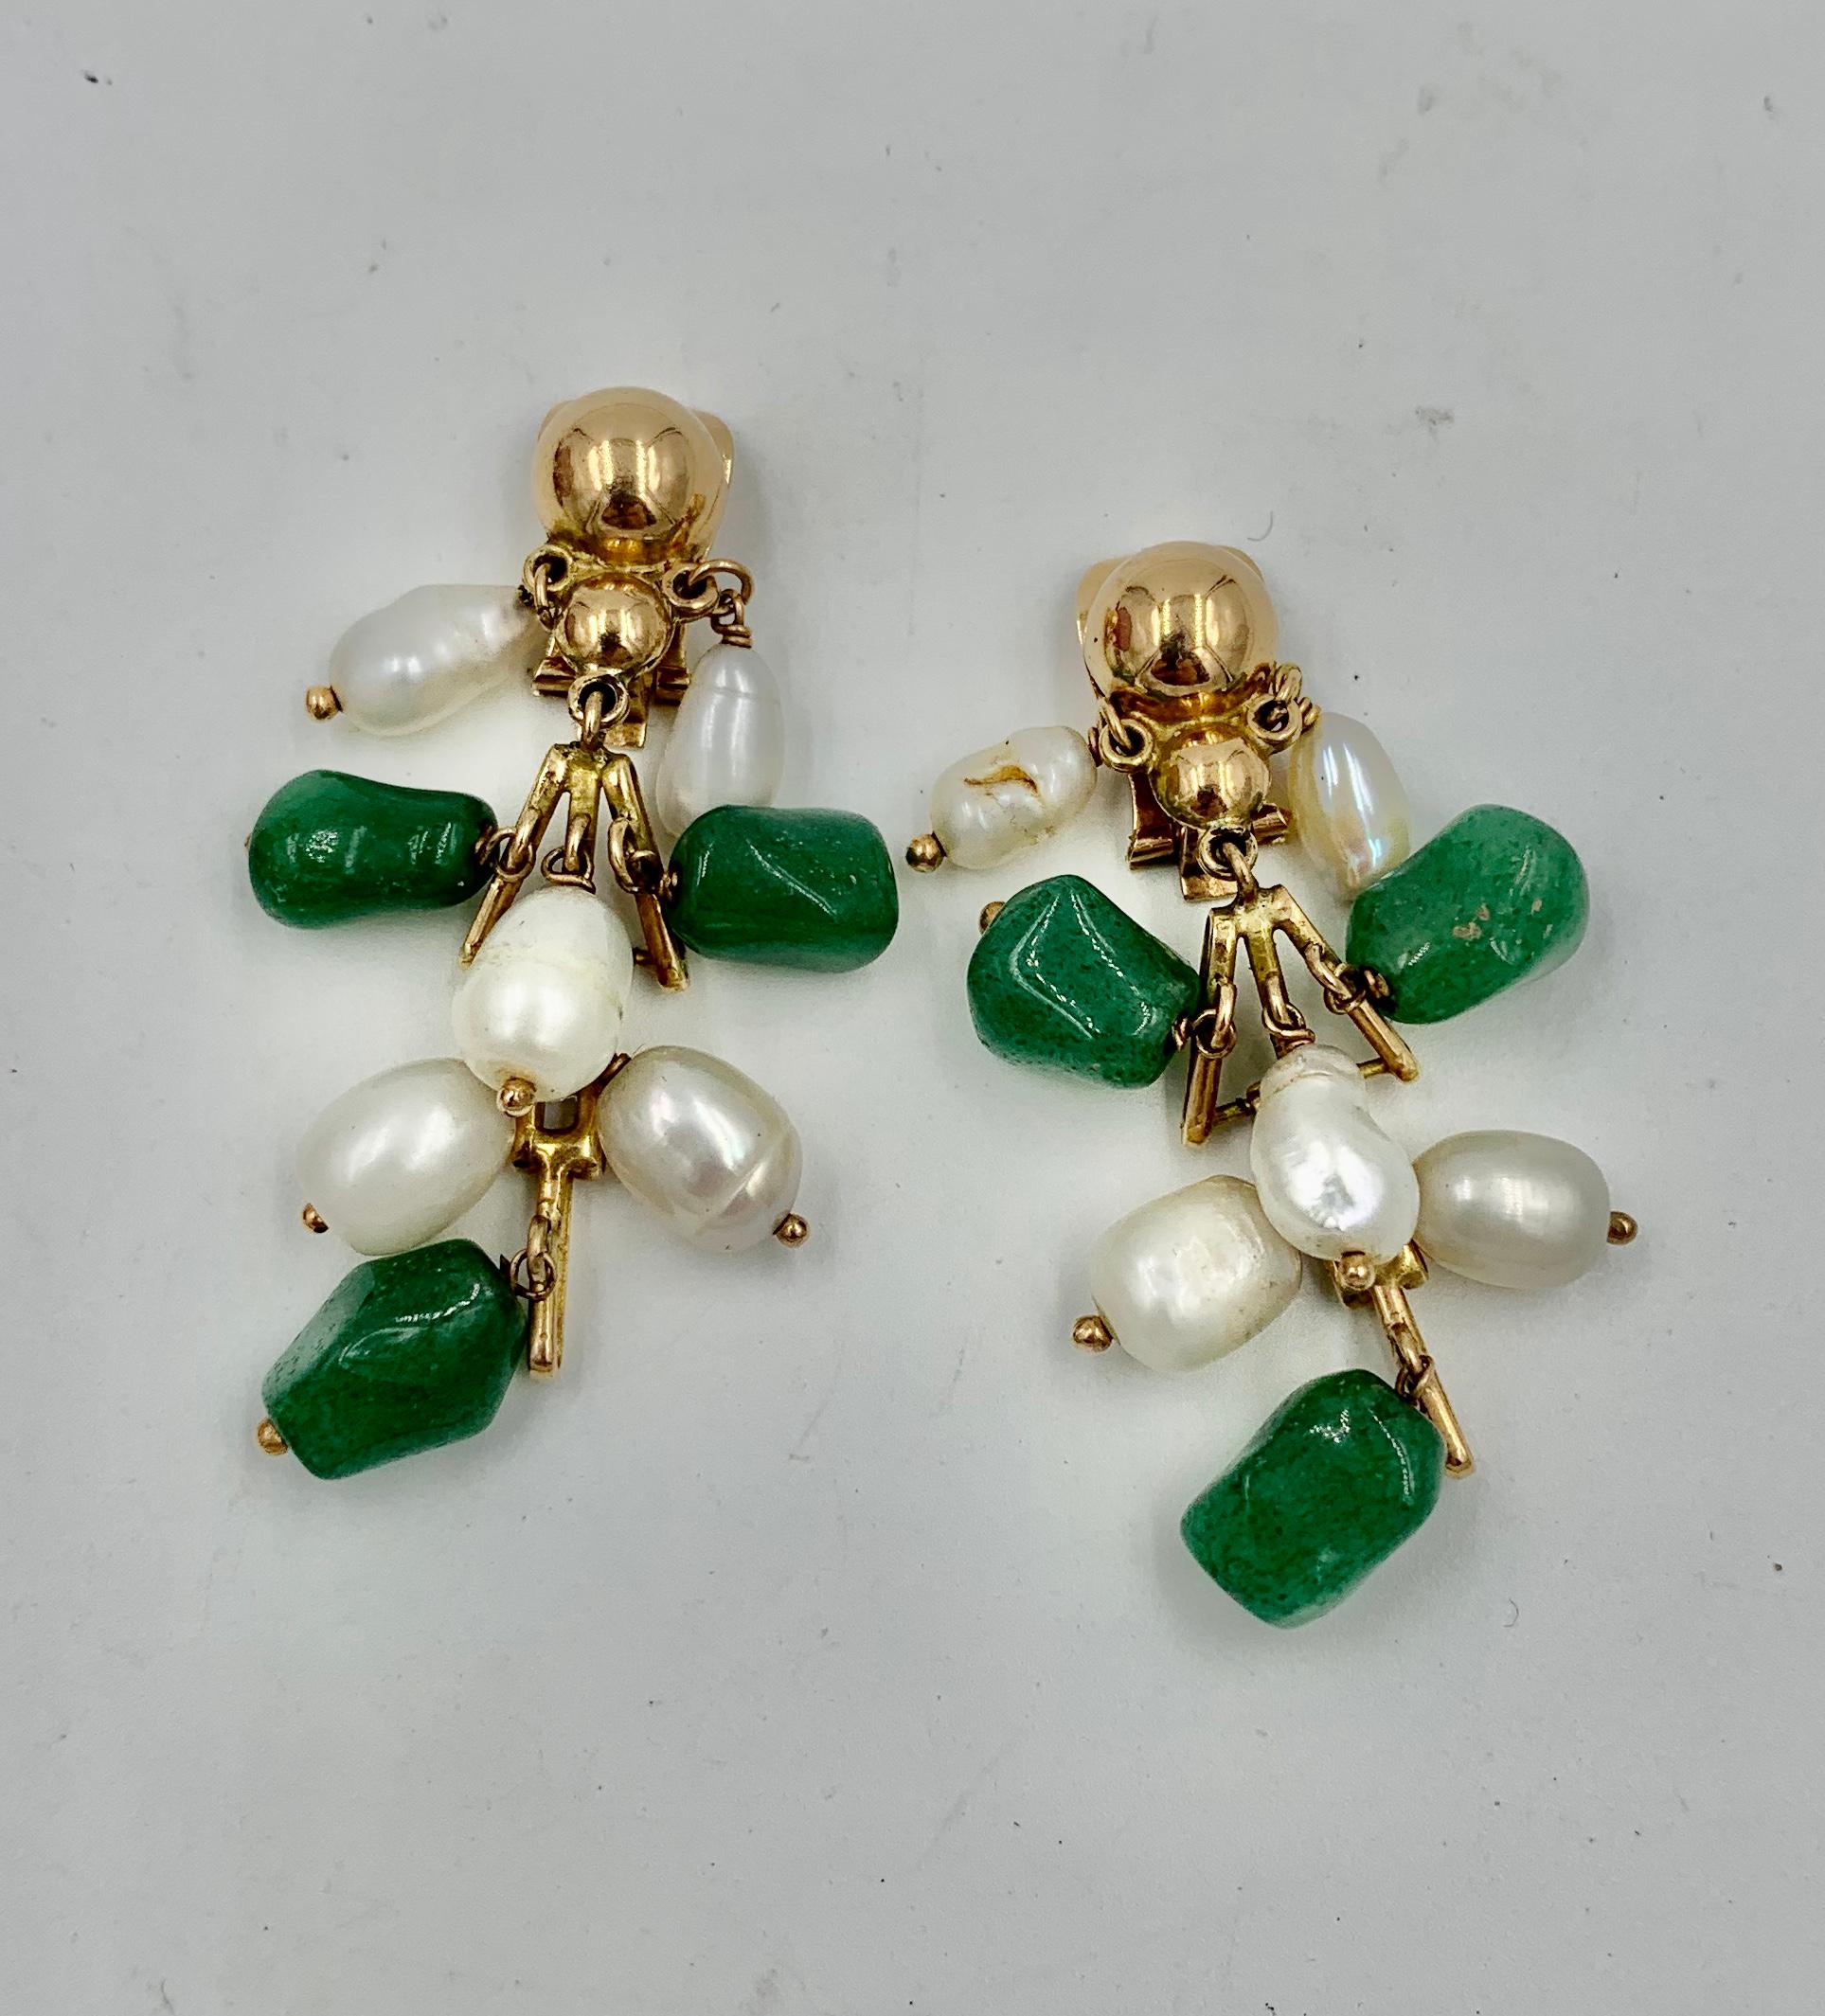 Une délicieuse paire de boucles d'oreilles pendantes en or jaune 14 carats, composées de jade et de perles.  Les boucles d'oreilles rétro ont des sections articulées en or 14 carats avec du jade vert et des perles qui pendent de l'or.  Les boucles